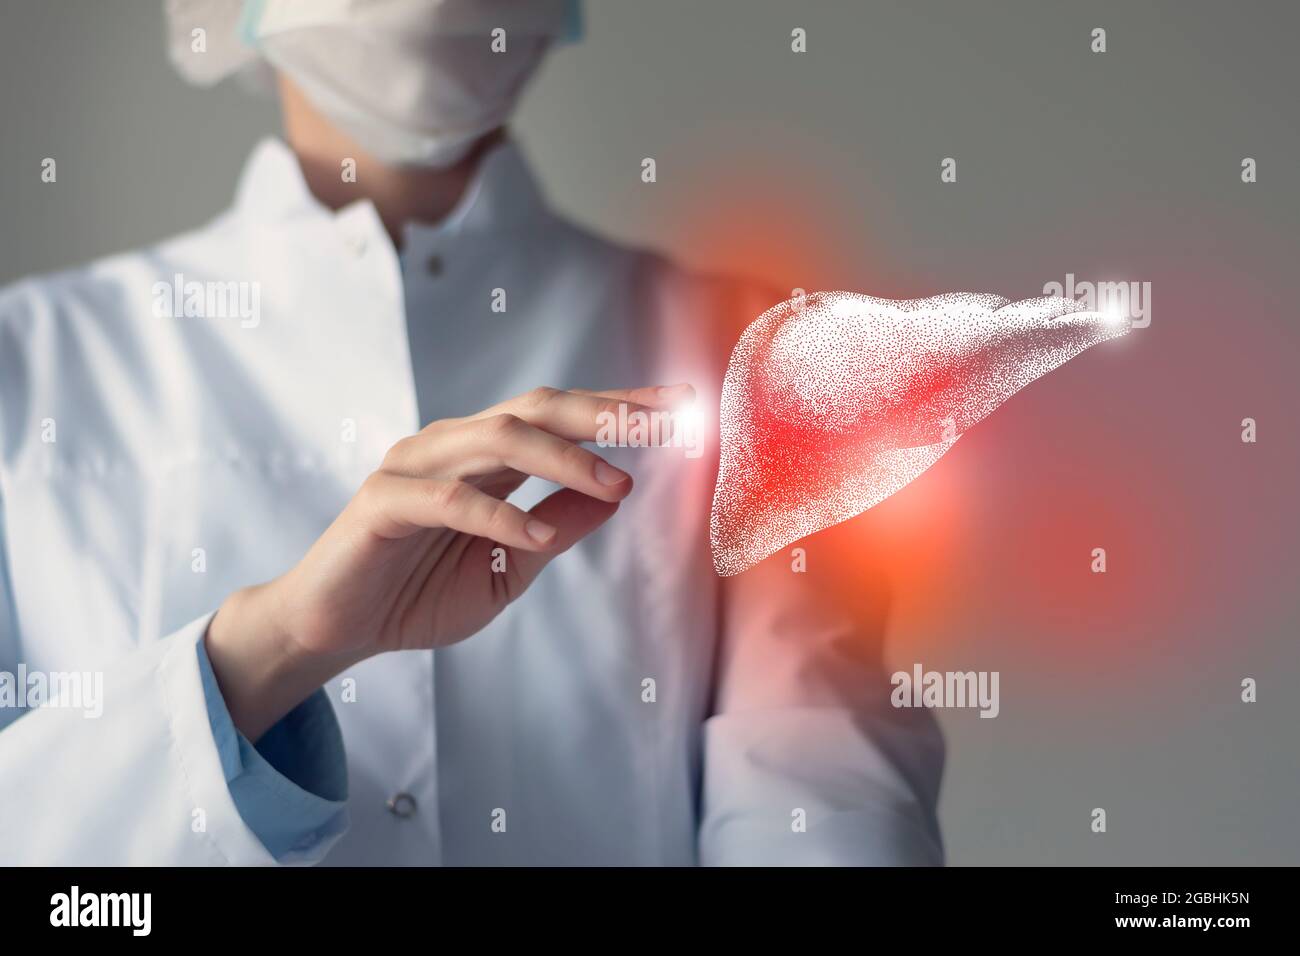 Il medico femminile tocca il fegato virtuale in mano. Foto sfocata, organo umano cucito a mano, evidenziato in rosso come simbolo di malattia. Assistenza ospedaliera co Foto Stock